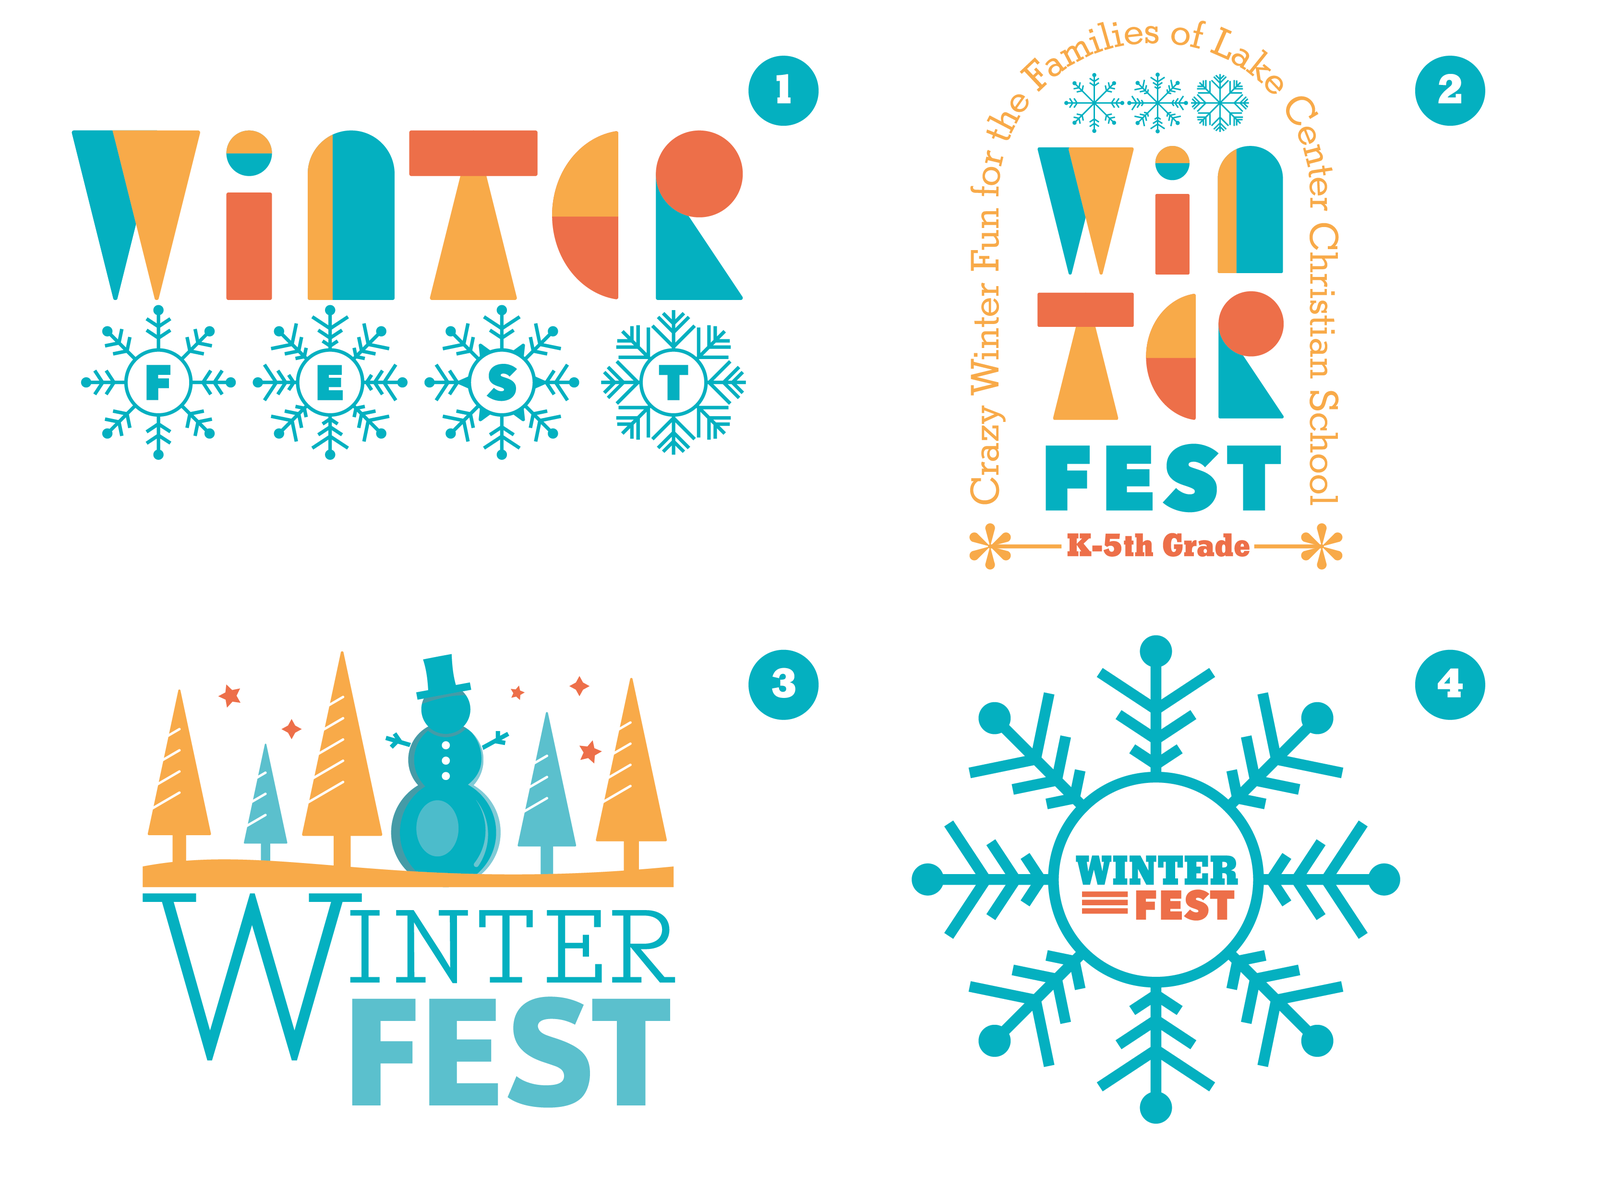 Winter Fest by Brett Faris on Dribbble